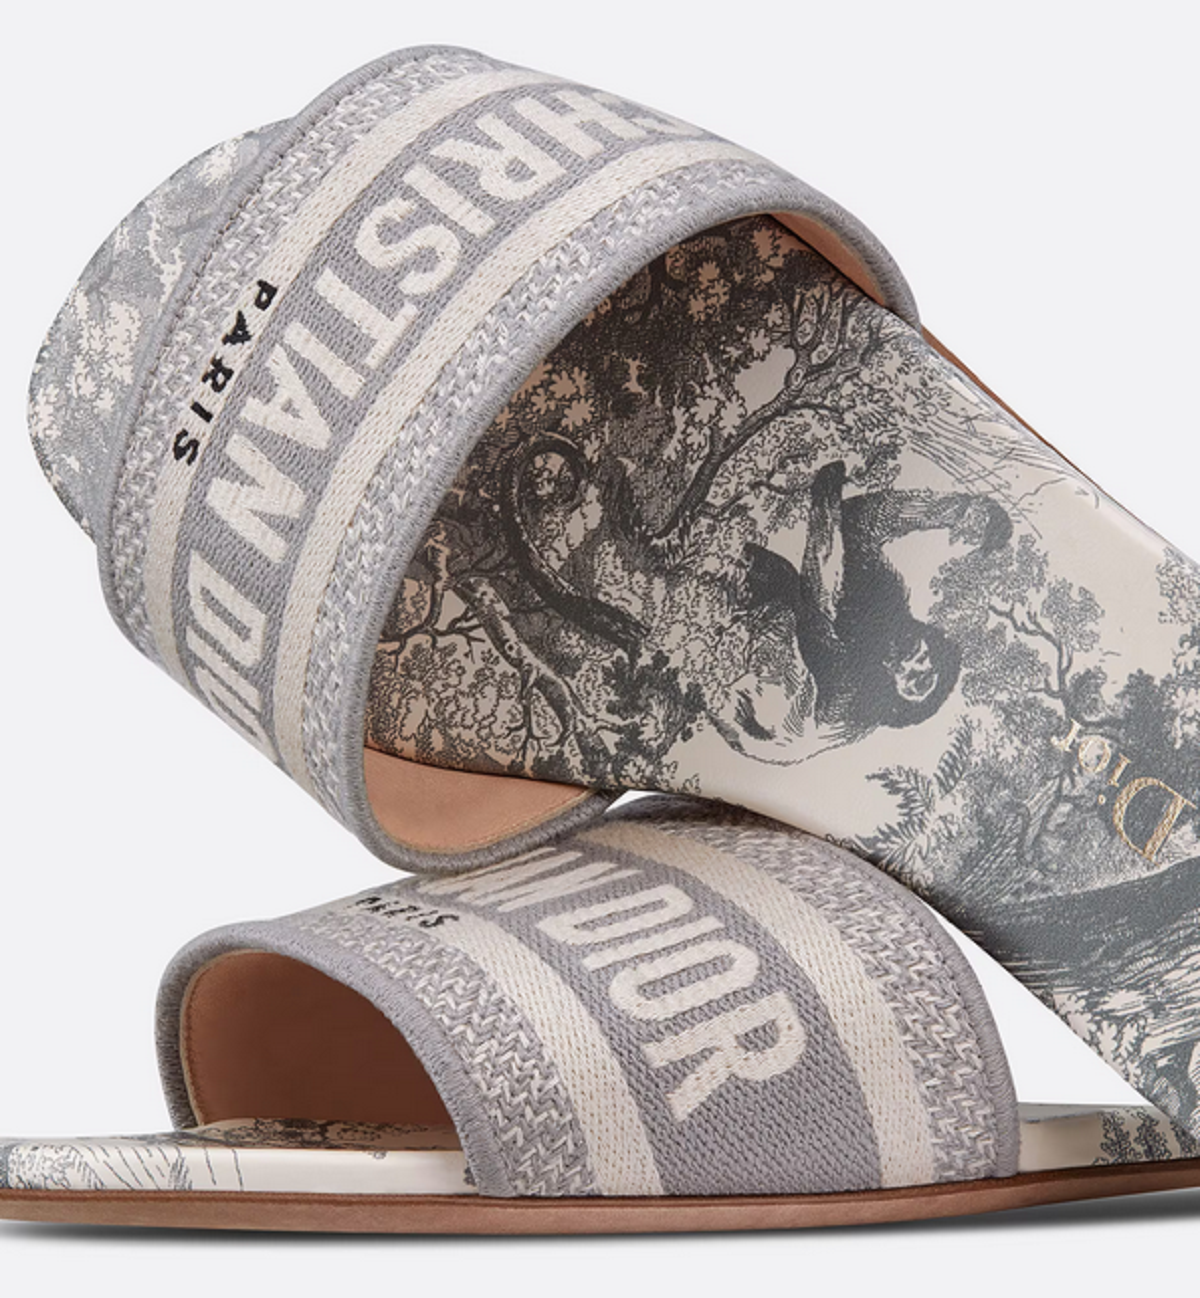 Detail sandal Dway Slide dalam koleksi sepatu Dior wanita.